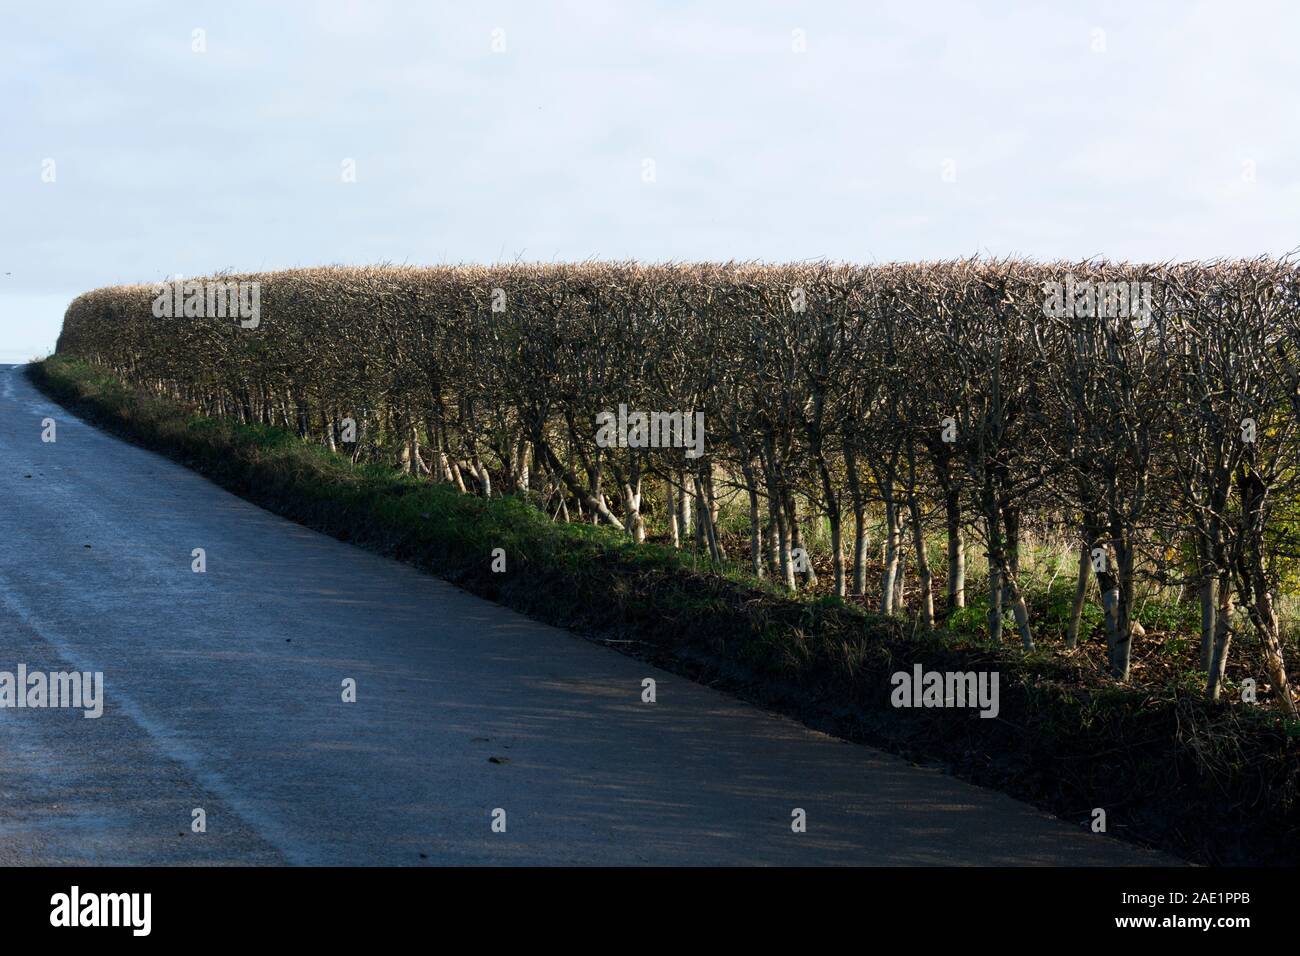 A roadside hedgerow in winter, Warwickshire, UK Stock Photo